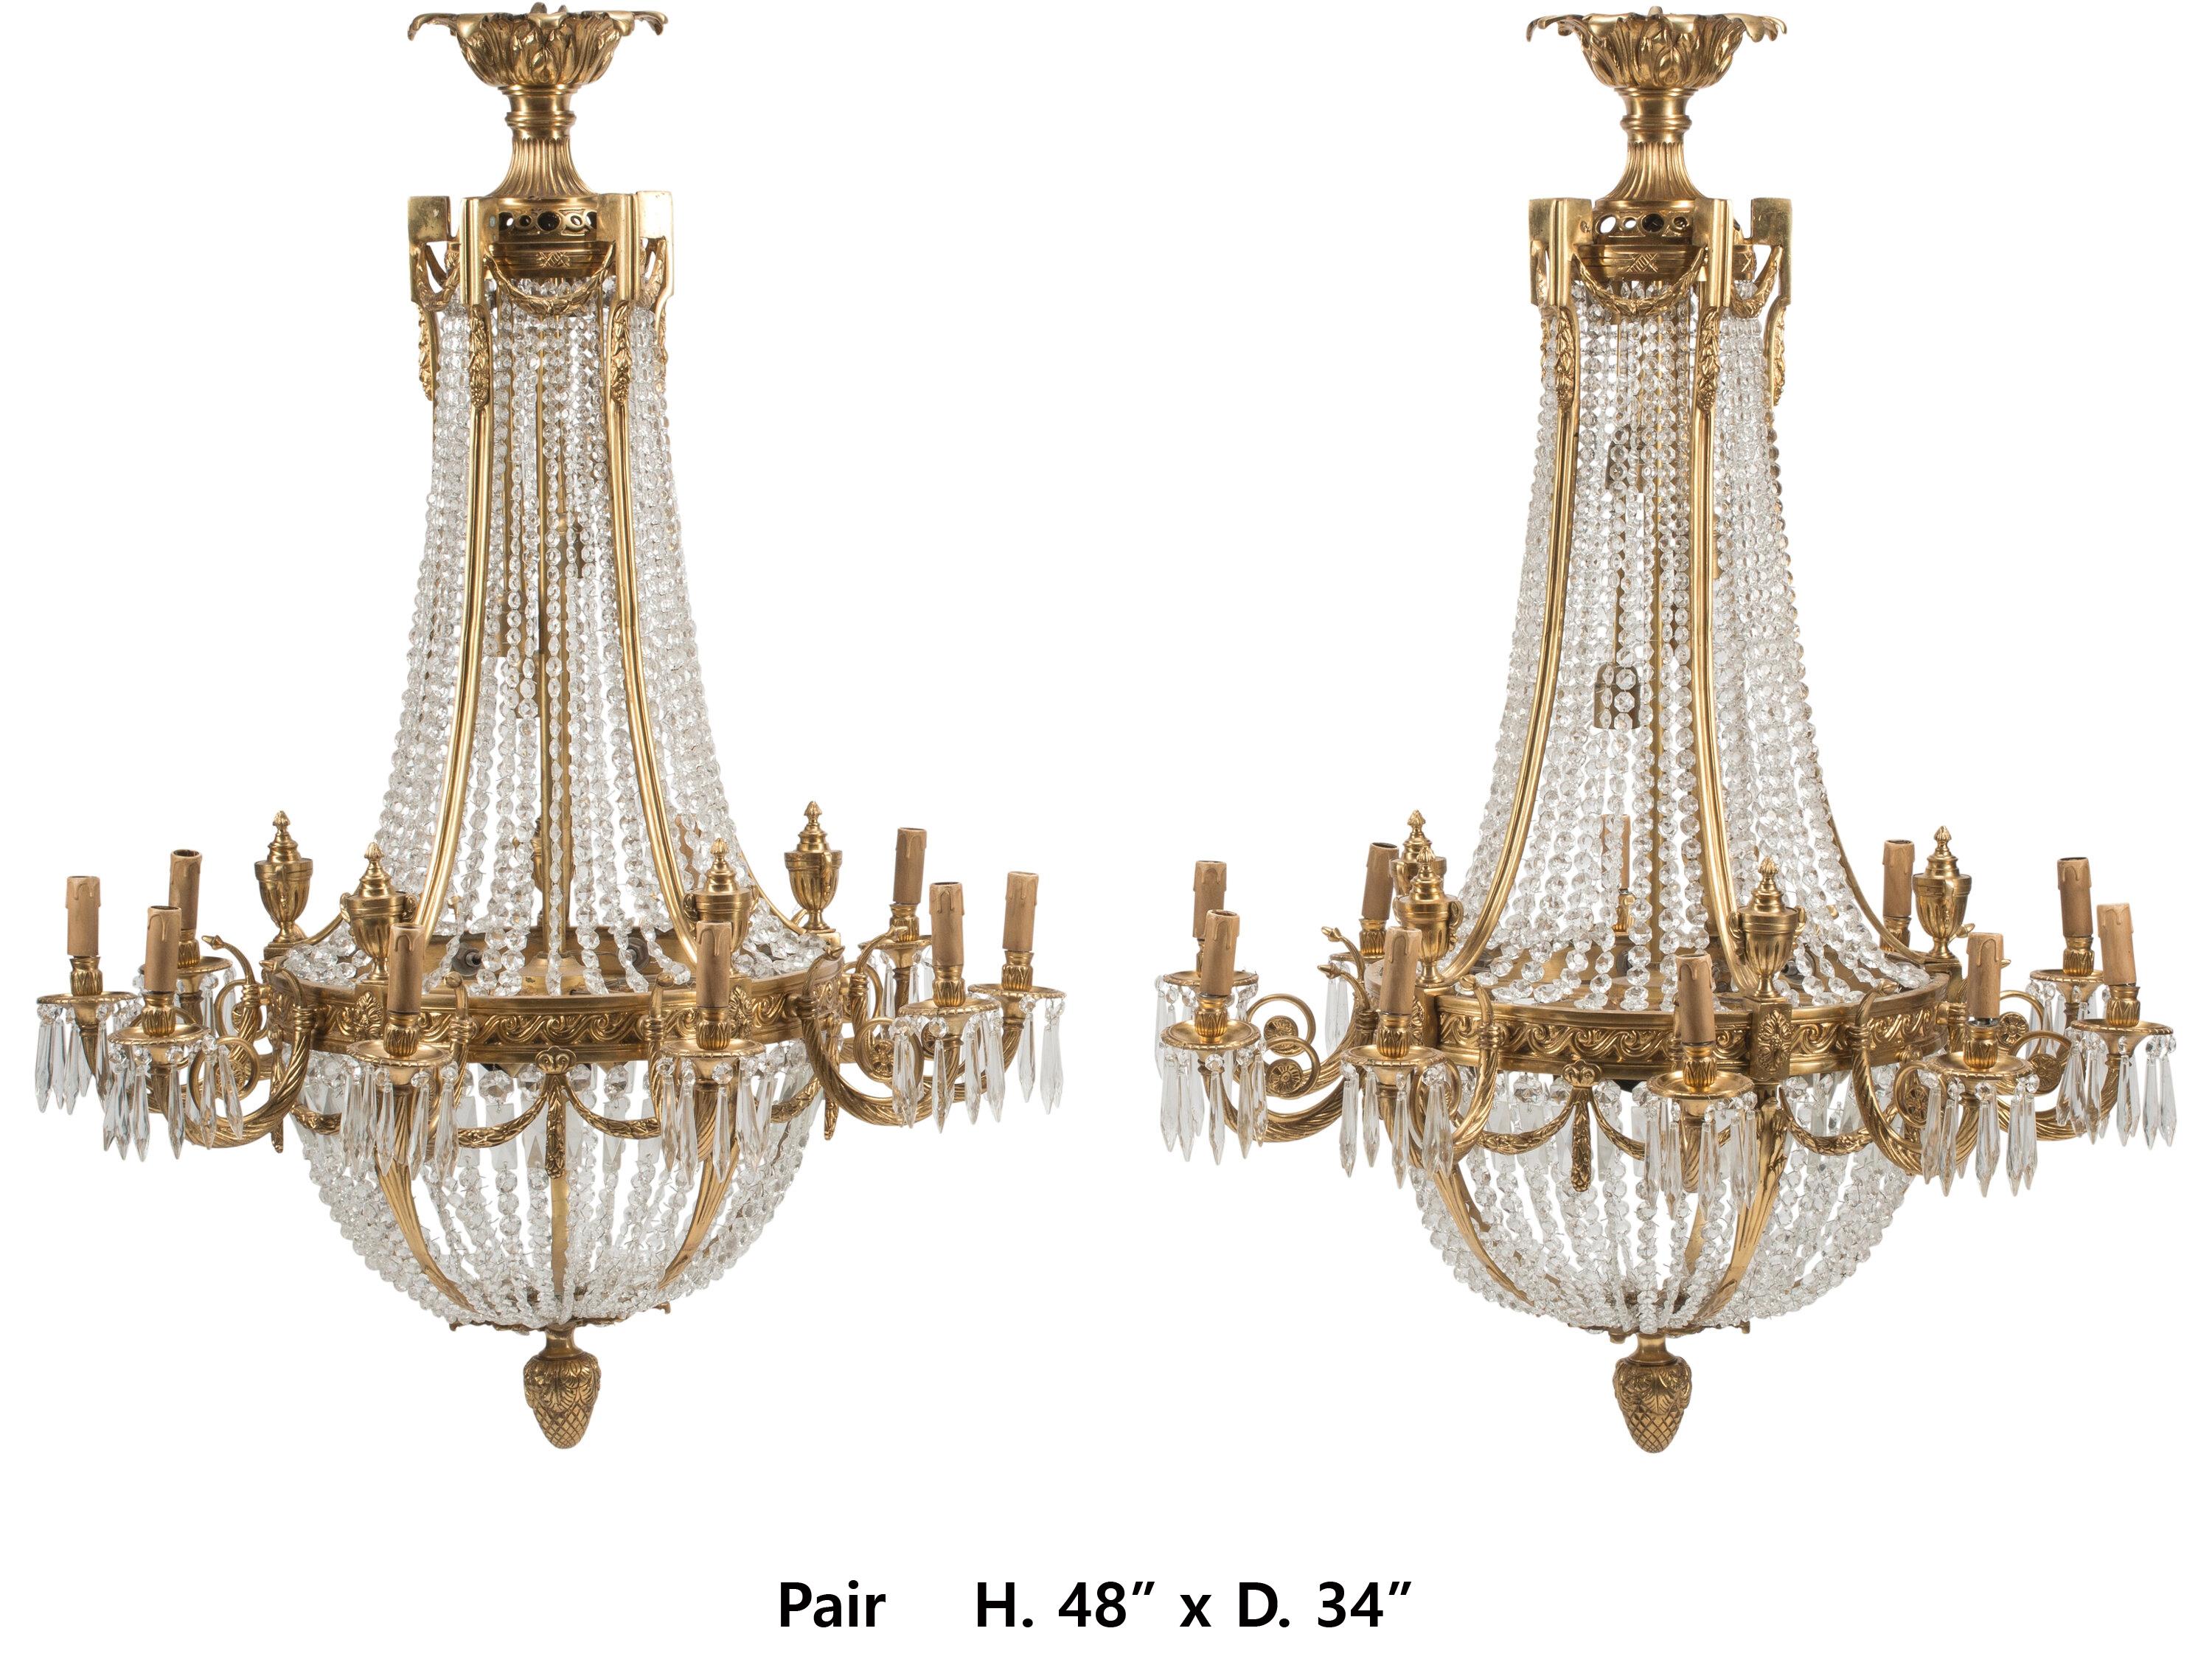 Impressionnante paire de lustres à dix lumières en bronze doré et cristal de style néoclassique français.
48 x 34 pouces
